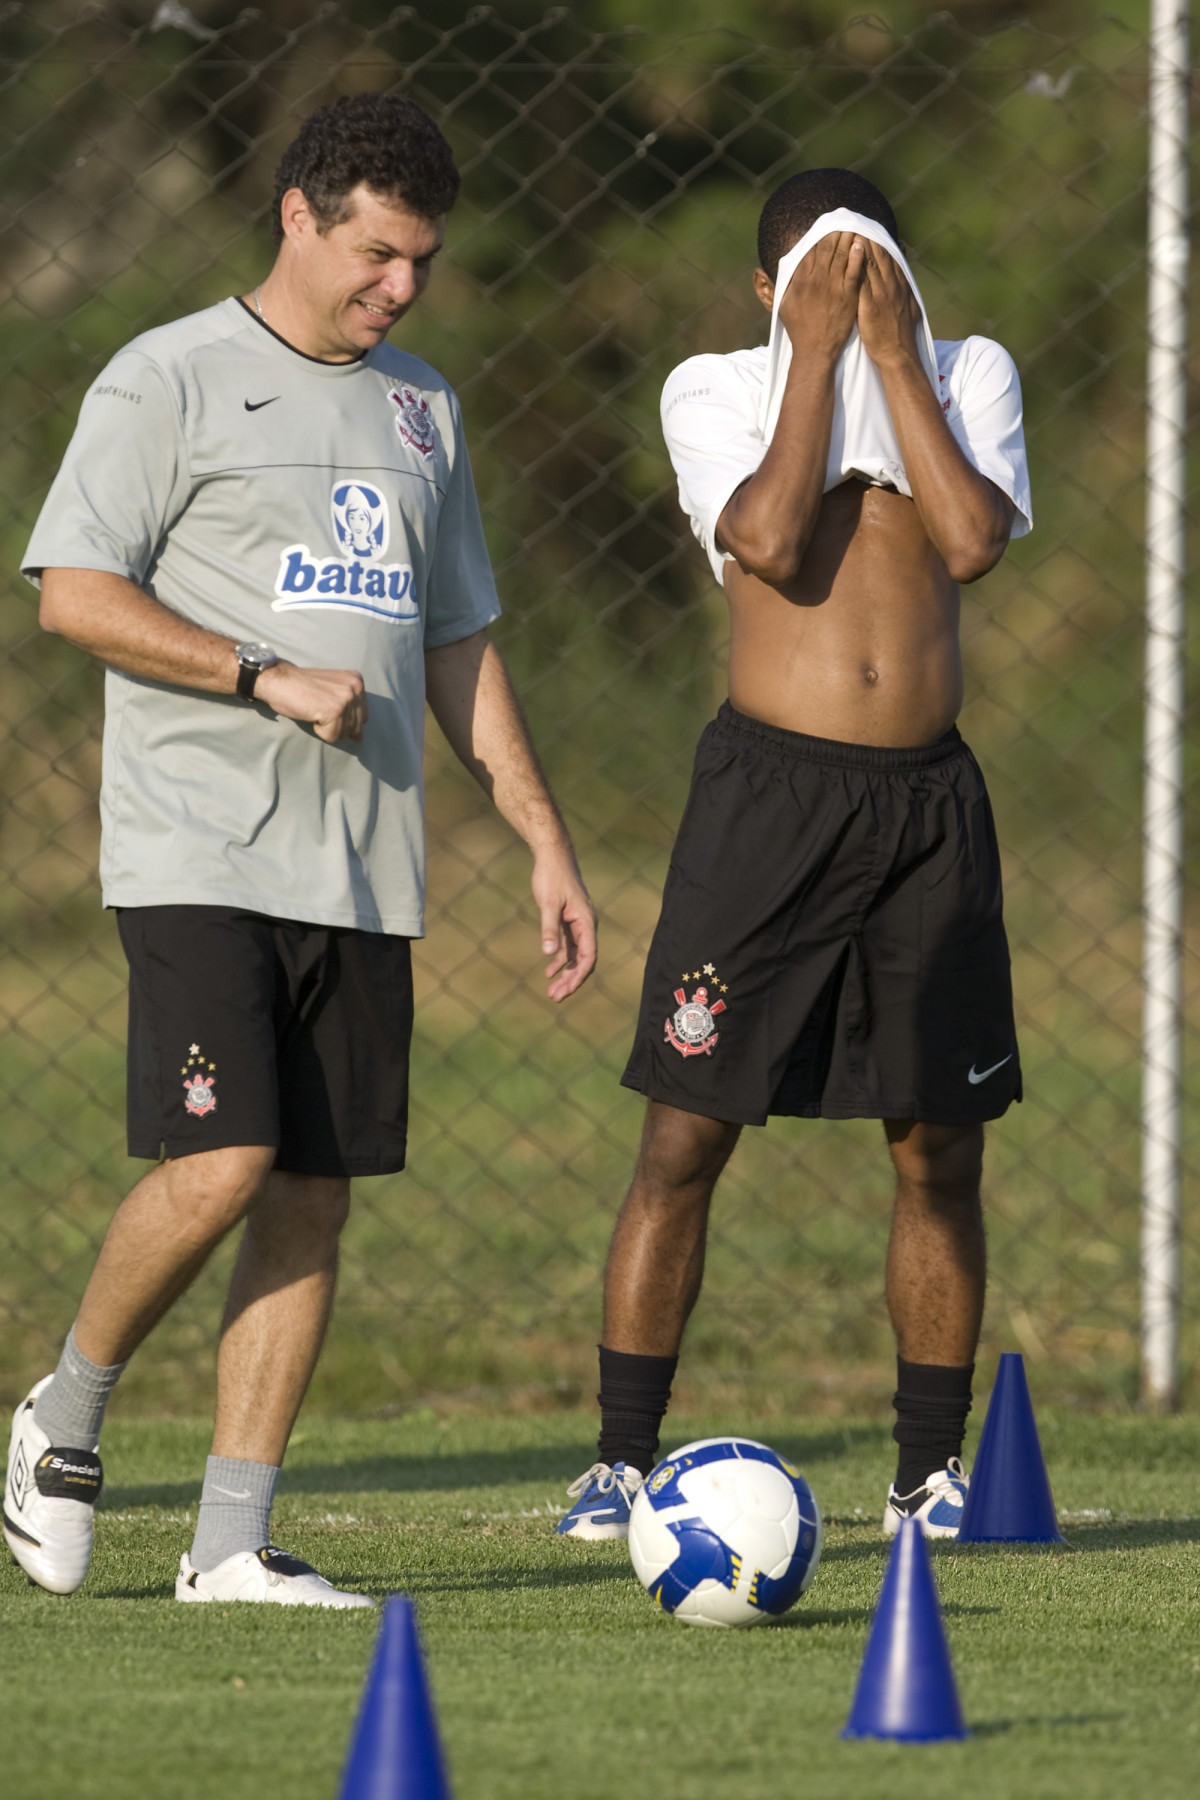 Durante o treino do Corinthians realizado esta tarde no Parque Ecolgico do Tiete. O prximo jogo ser contra o Fluminense no Pacaembu, amanh, quarta-feira, 13/05 a noite, jogo da ida das quartas de final da Copa do Brasil 2009